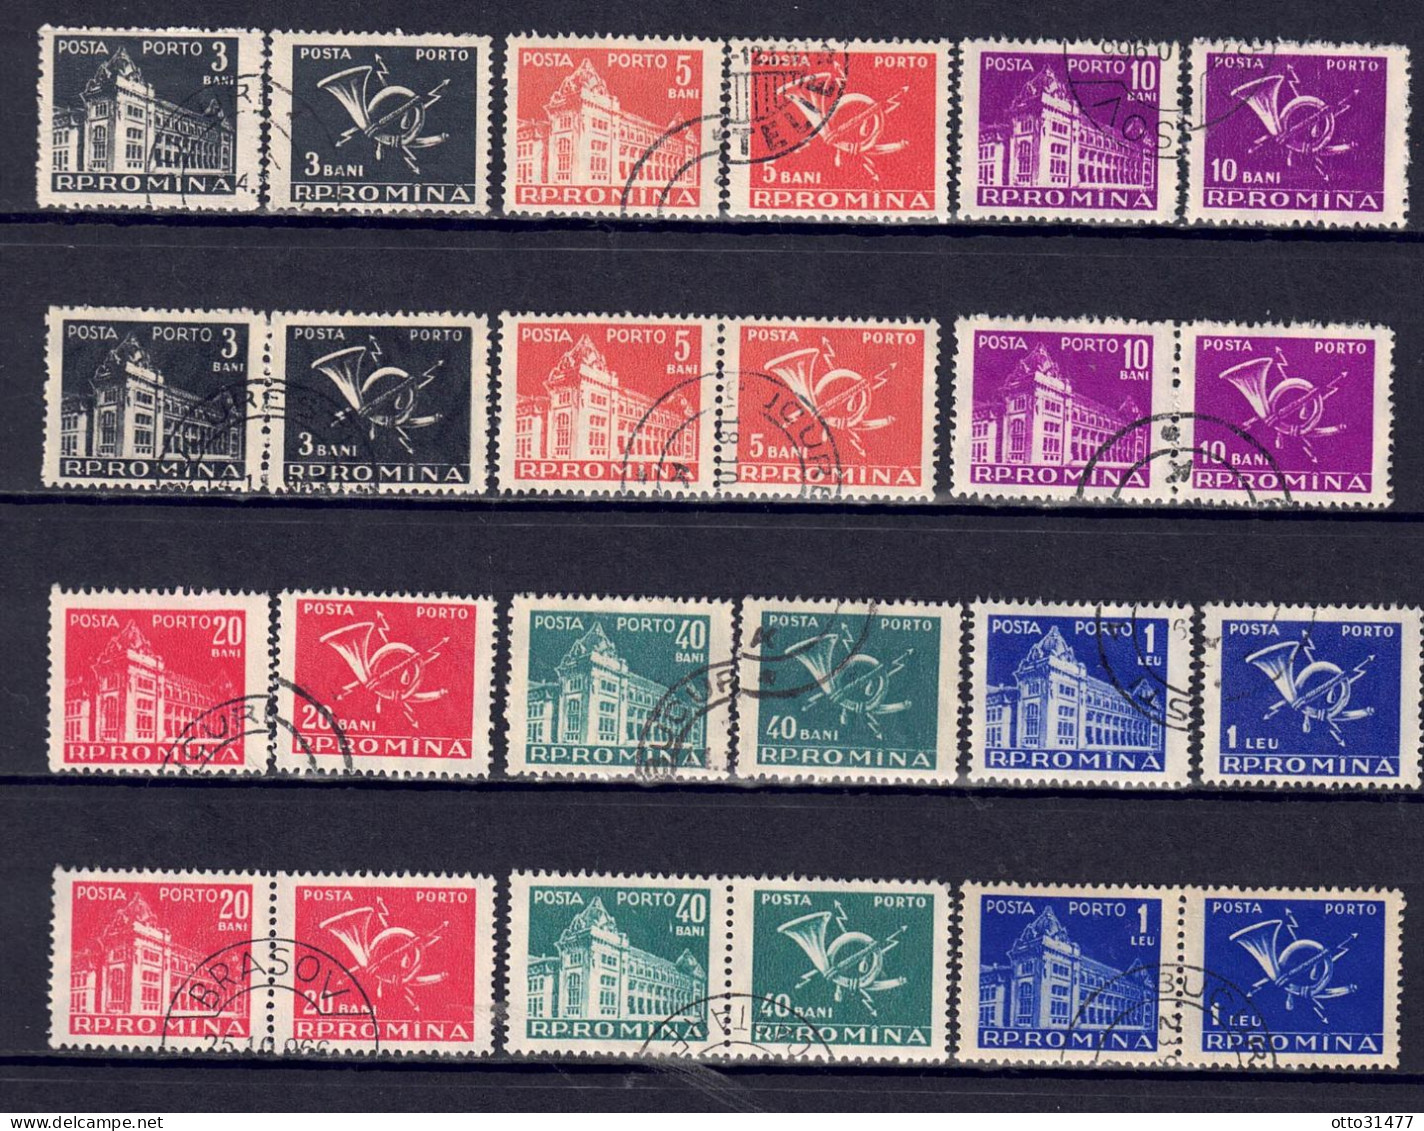 Rumänien 1957 - Portomarken, Nr. 101 - 106, Gestempelt / Used - Portomarken